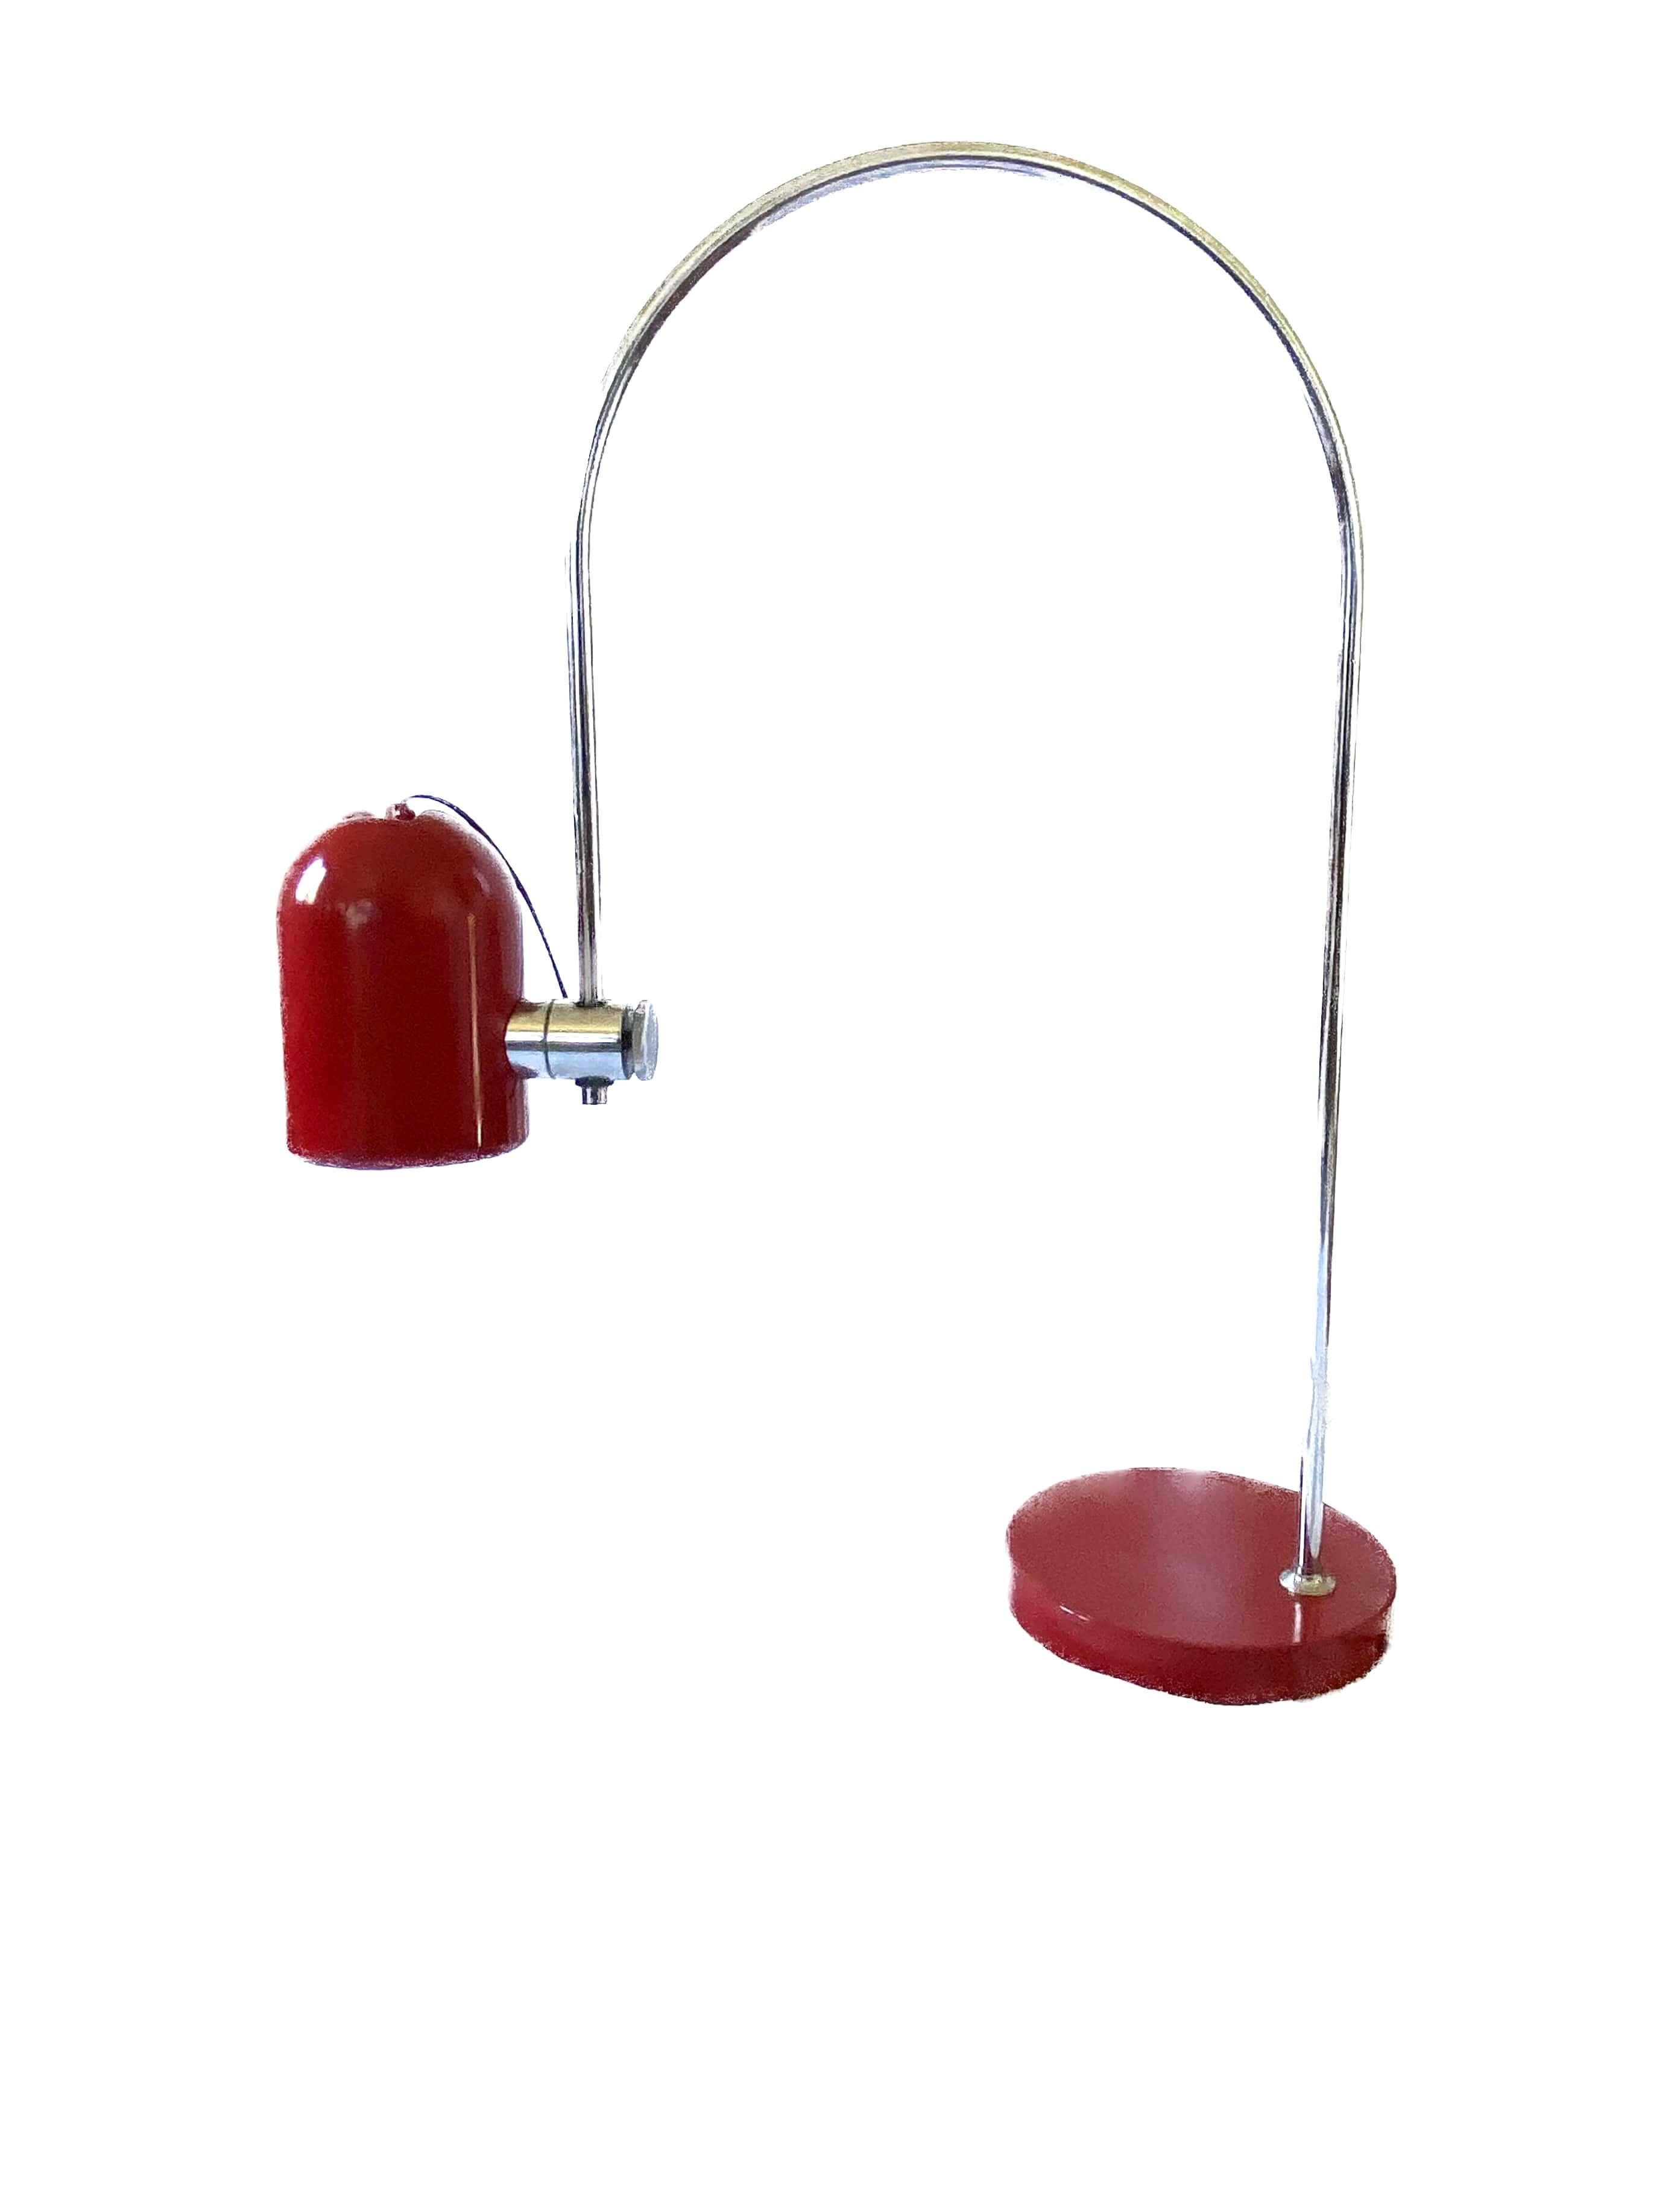 Goffredo Reggiani, Arch Table Lamp, Reggiani Italy, 1970s For Sale 3